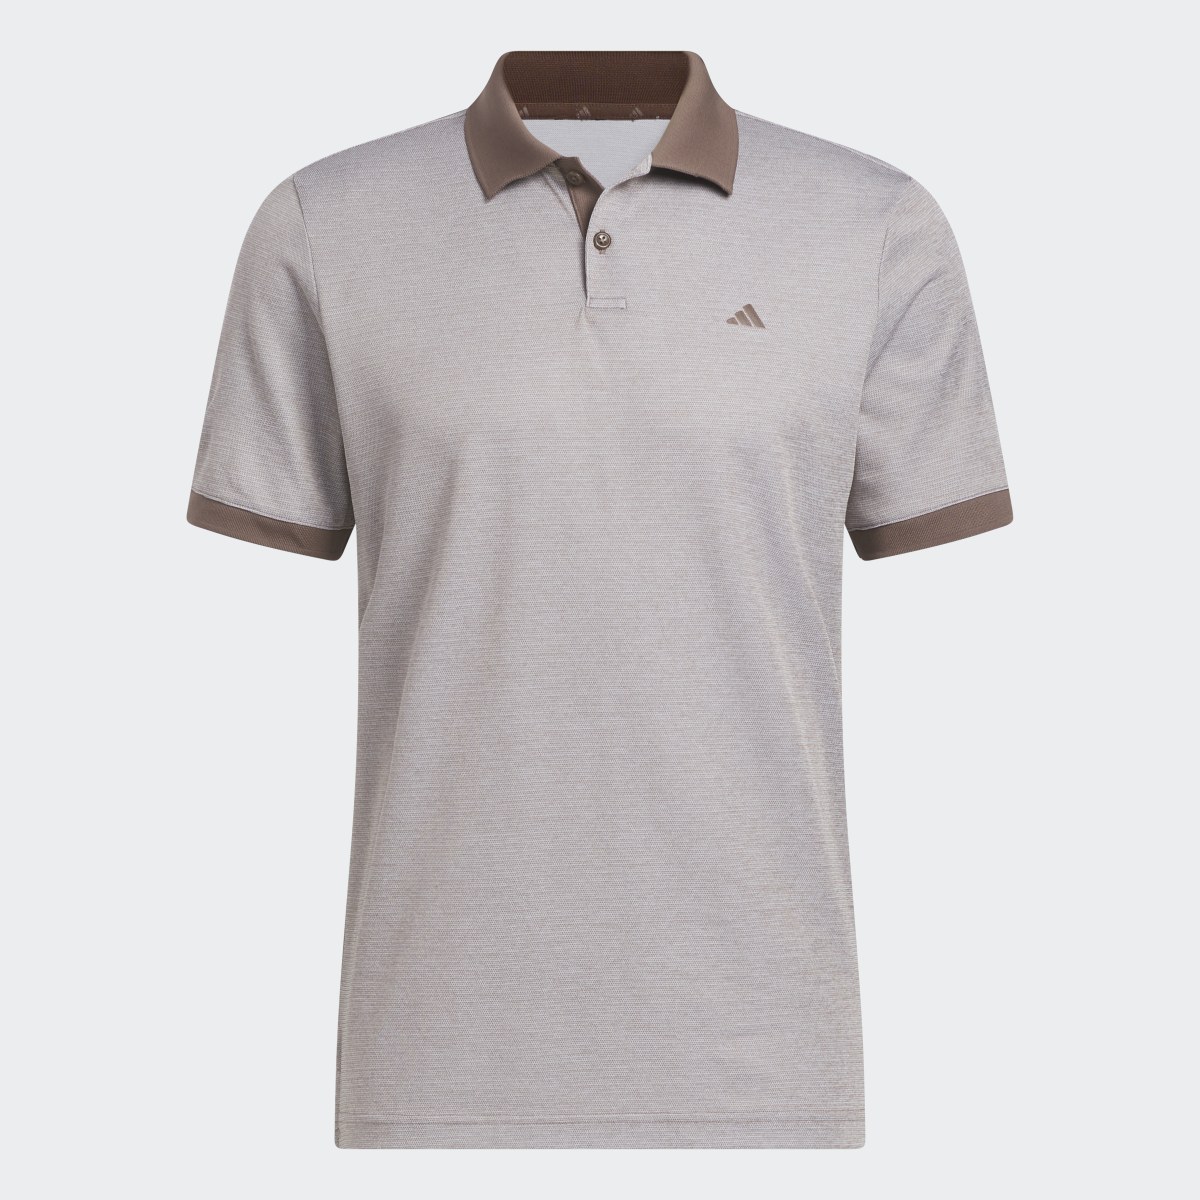 Adidas Ultimate365 No-Show Golf Polo Shirt. 5